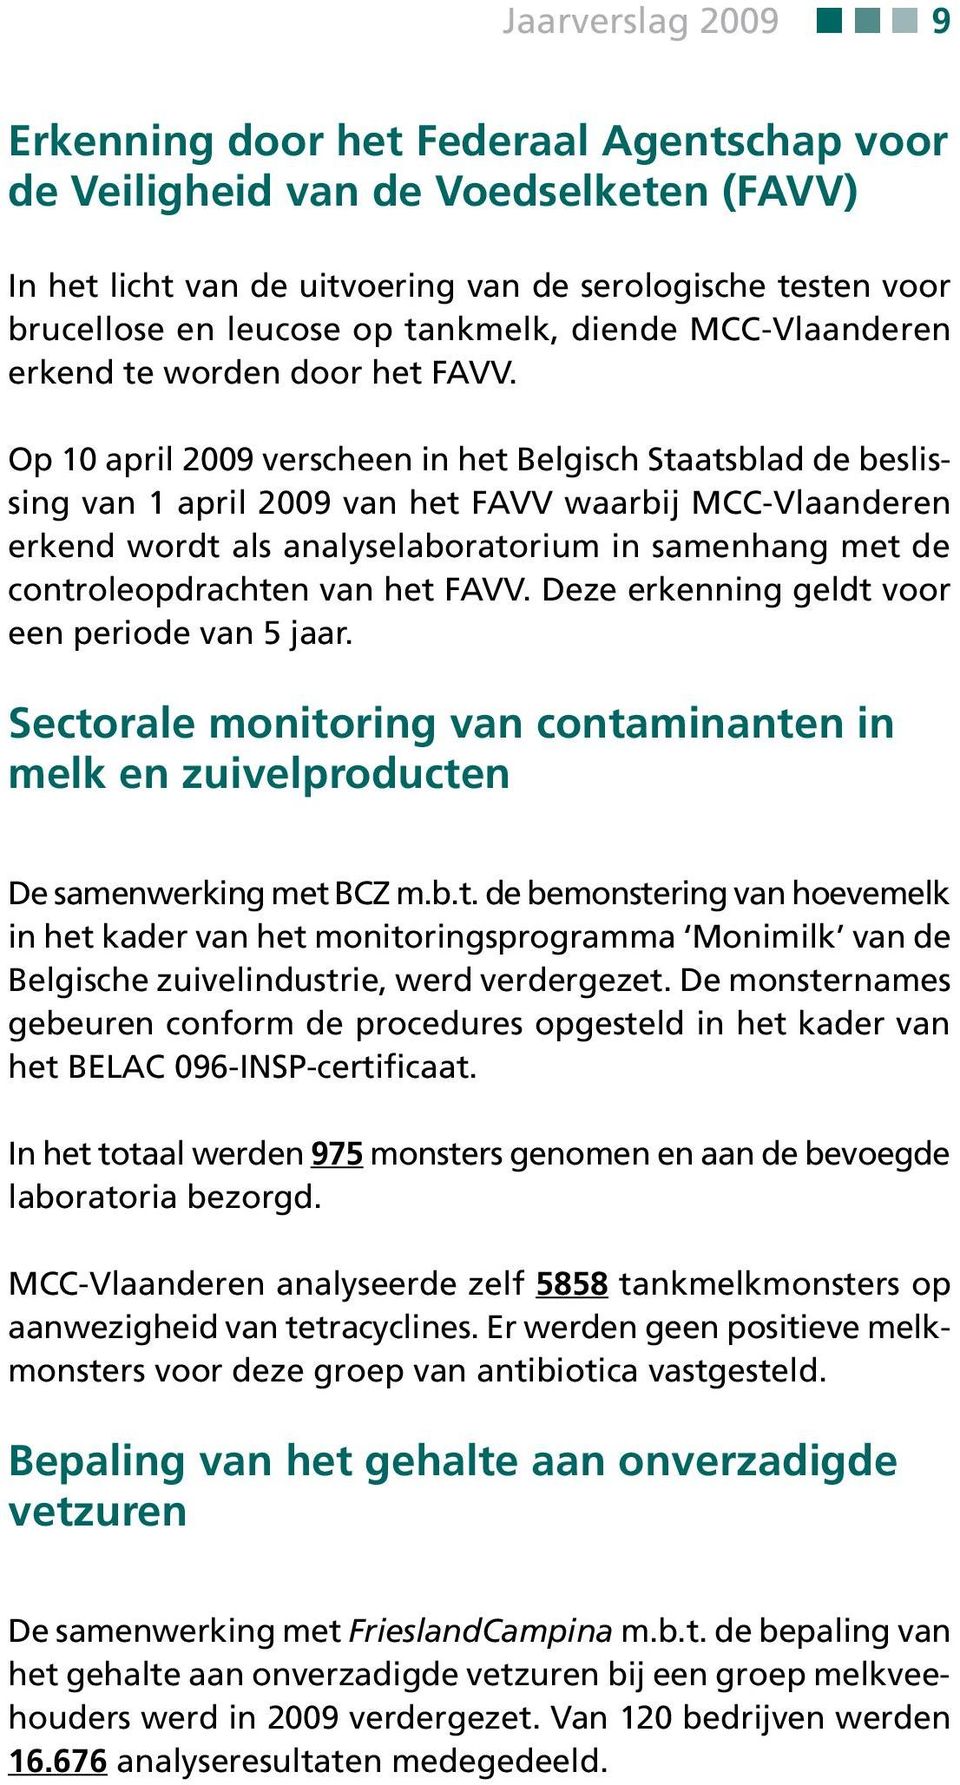 Op 10 april 2009 verscheen in het Belgisch Staatsblad de beslissing van 1 april 2009 van het FAVV waarbij MCC-Vlaanderen erkend wordt als analyselaboratorium in samenhang met de controleopdrachten